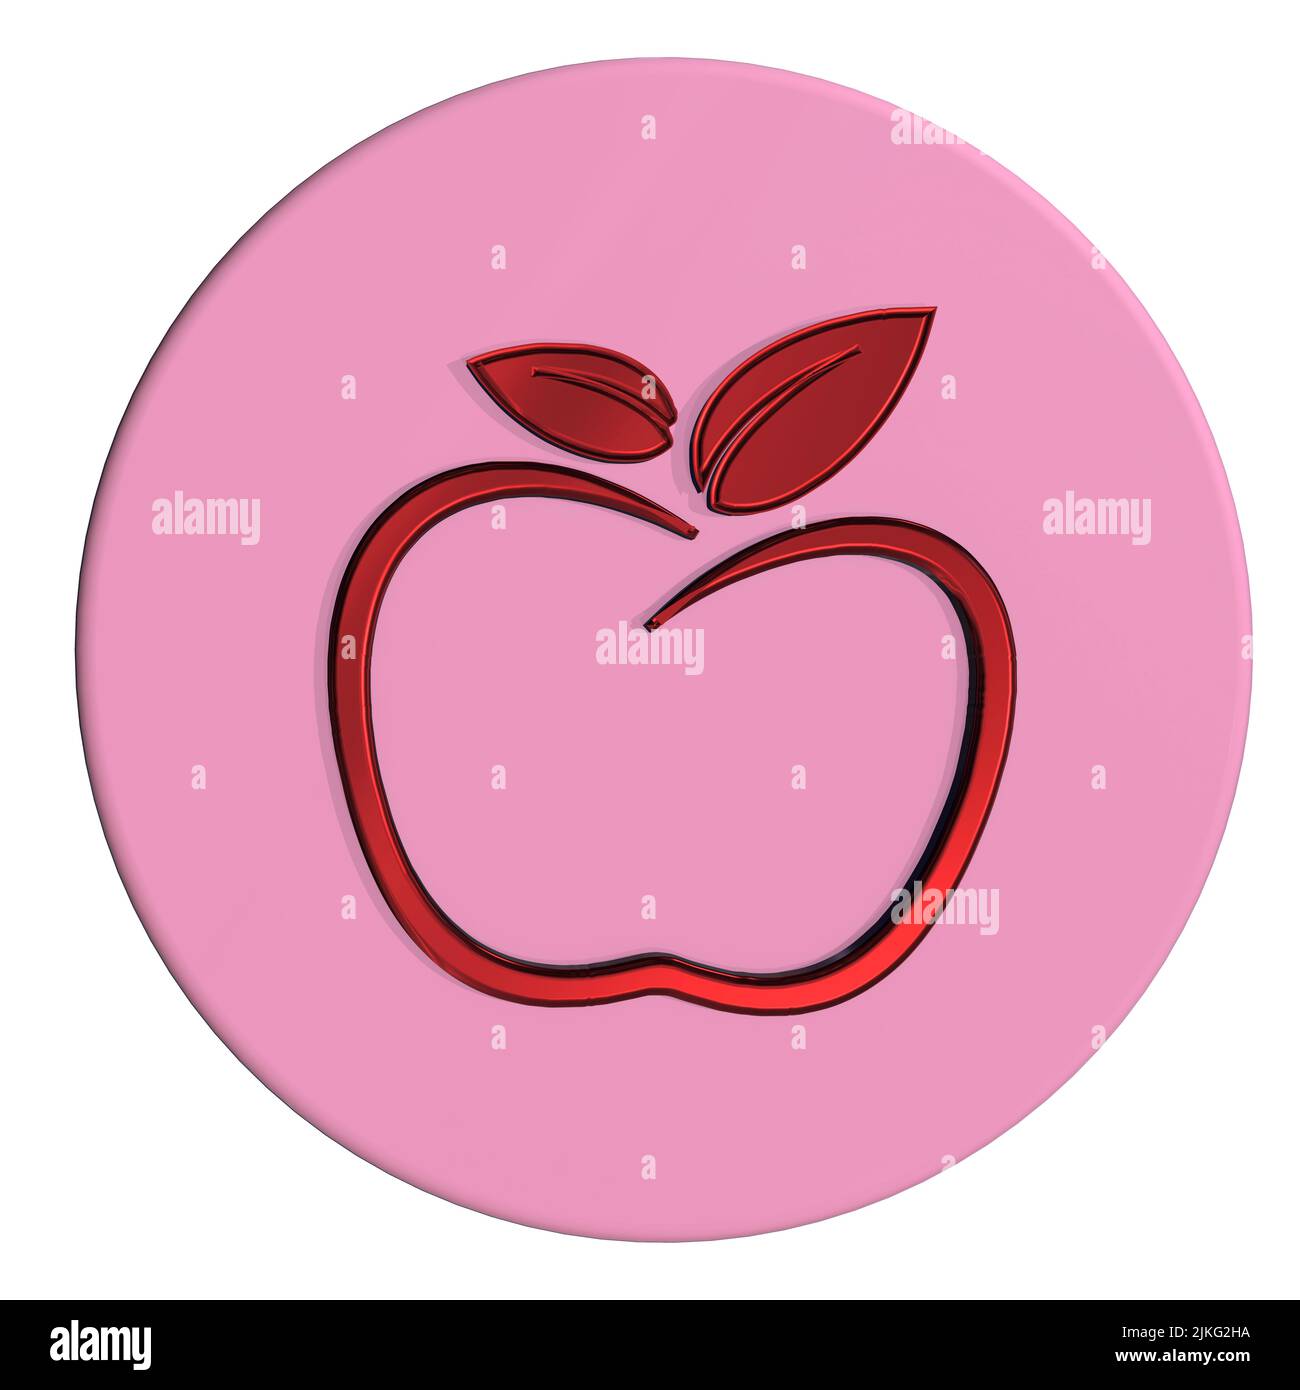 logotipo de diseño gráfico concepto de manzana concepto de dieta saludable concepto de estilo de vida saludable fondo blanco aislado Foto de stock